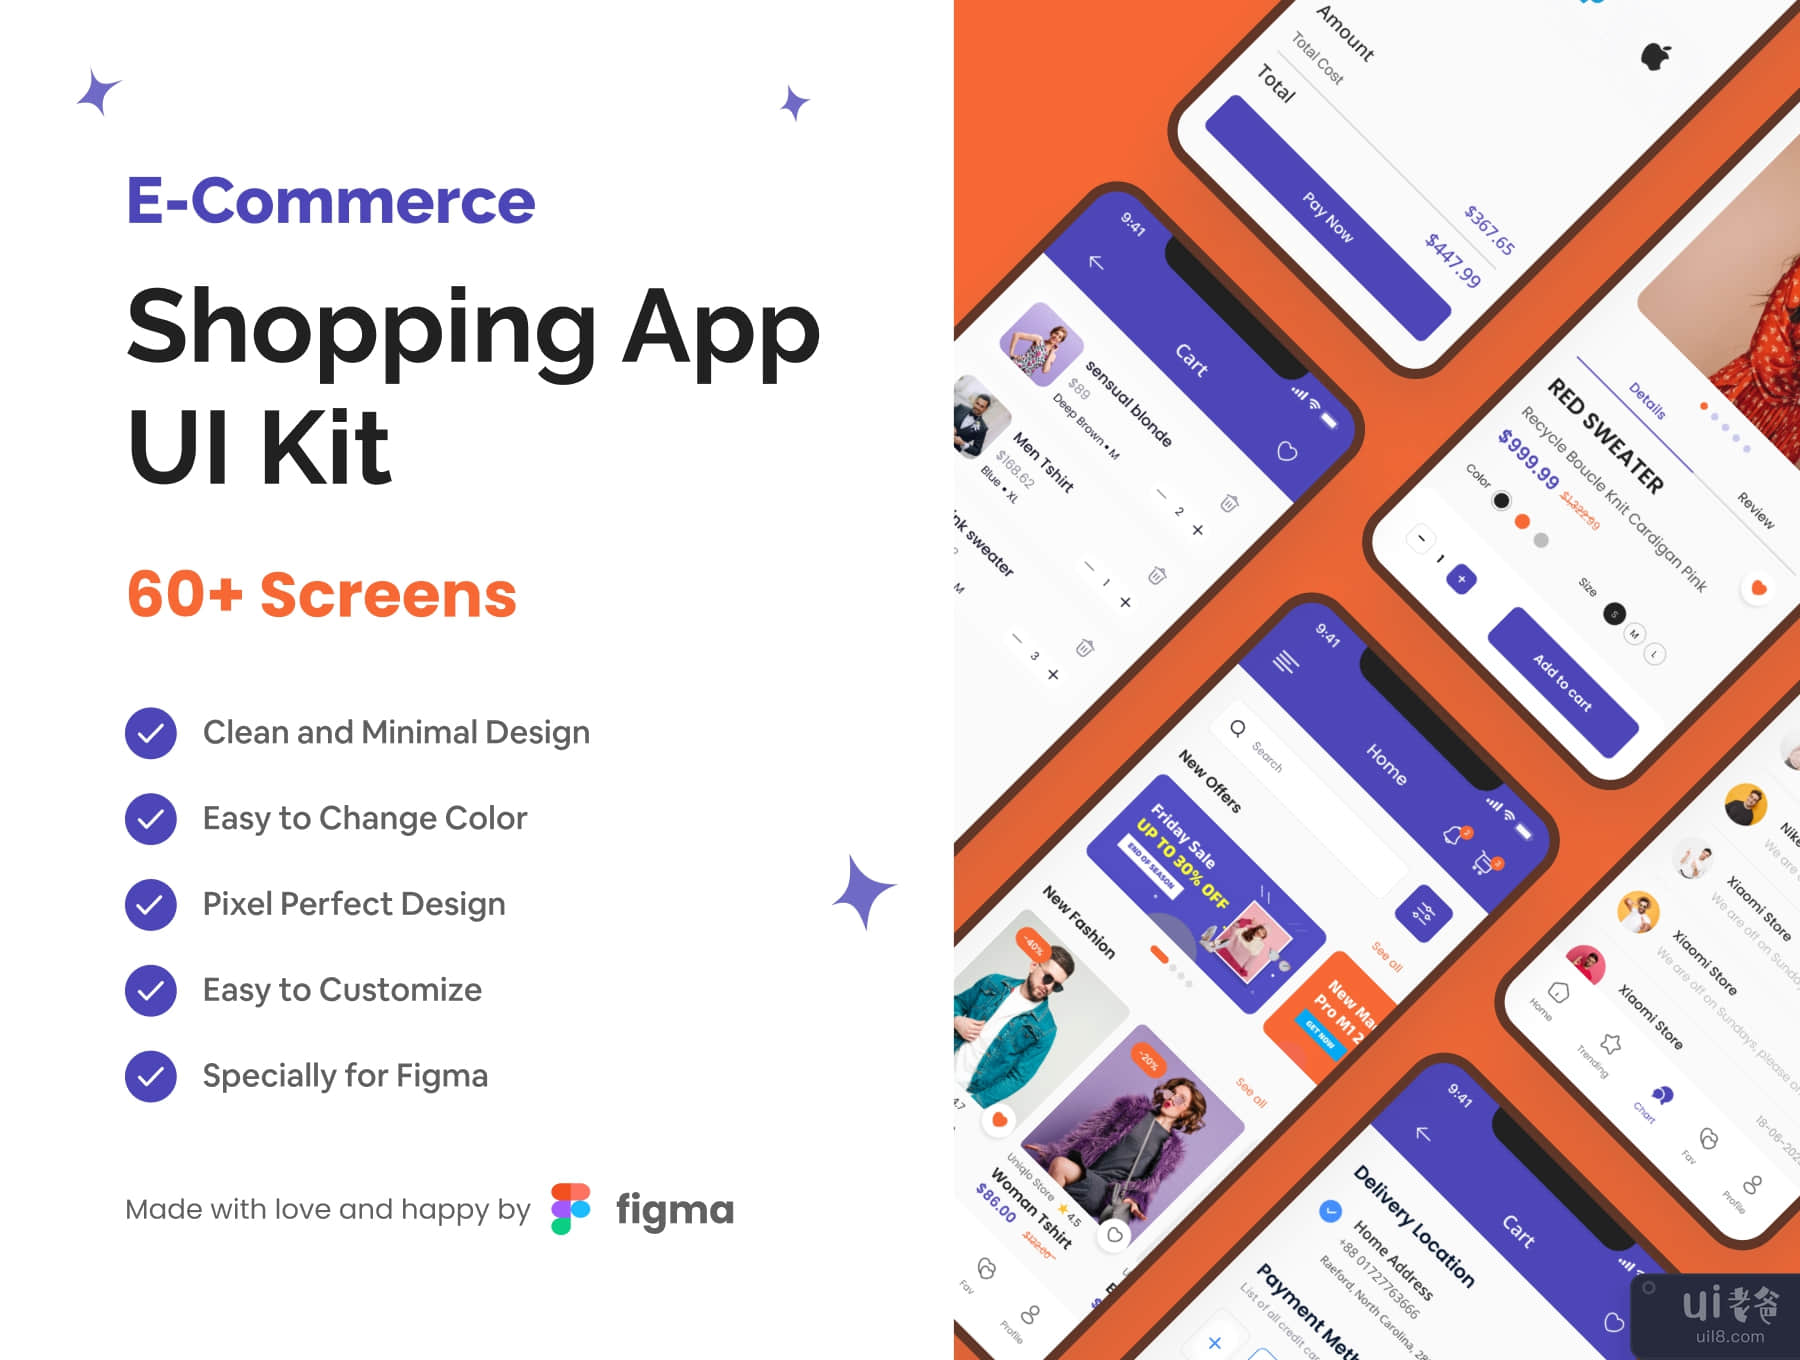 电子商务购物应用程序 UI 工具包 (E-Commerce Shopping App UI Kit)插图5